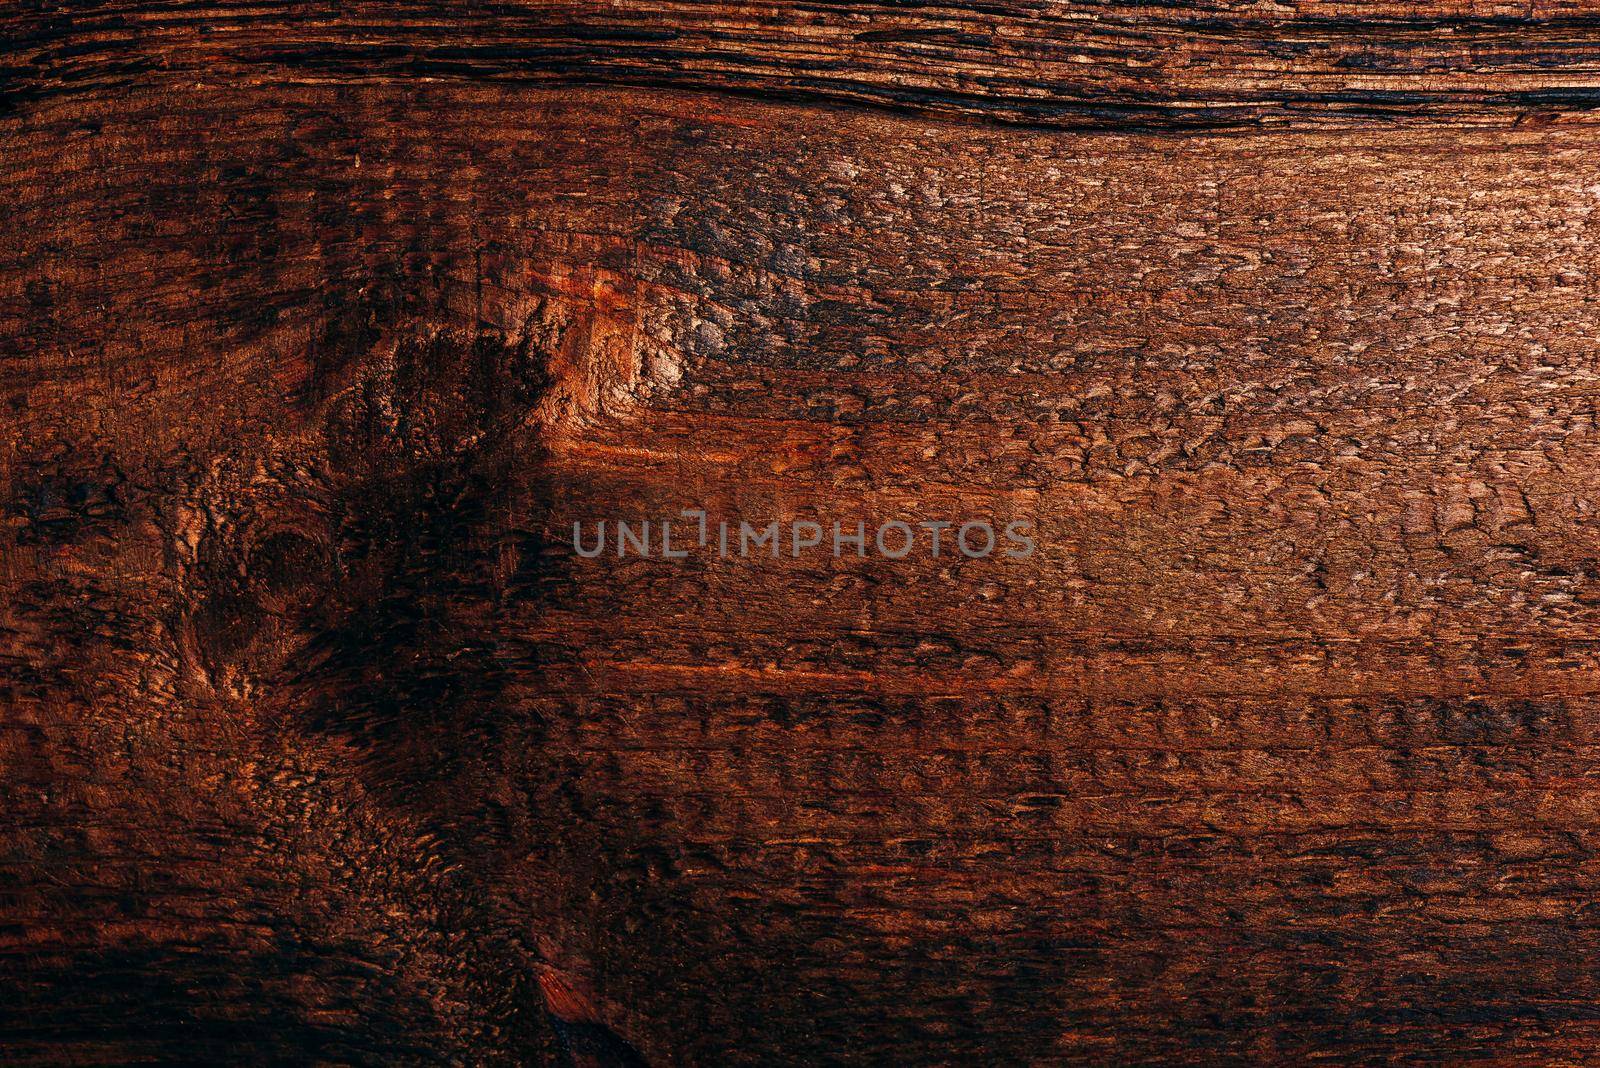 Old dark wooden surface by Seva_blsv